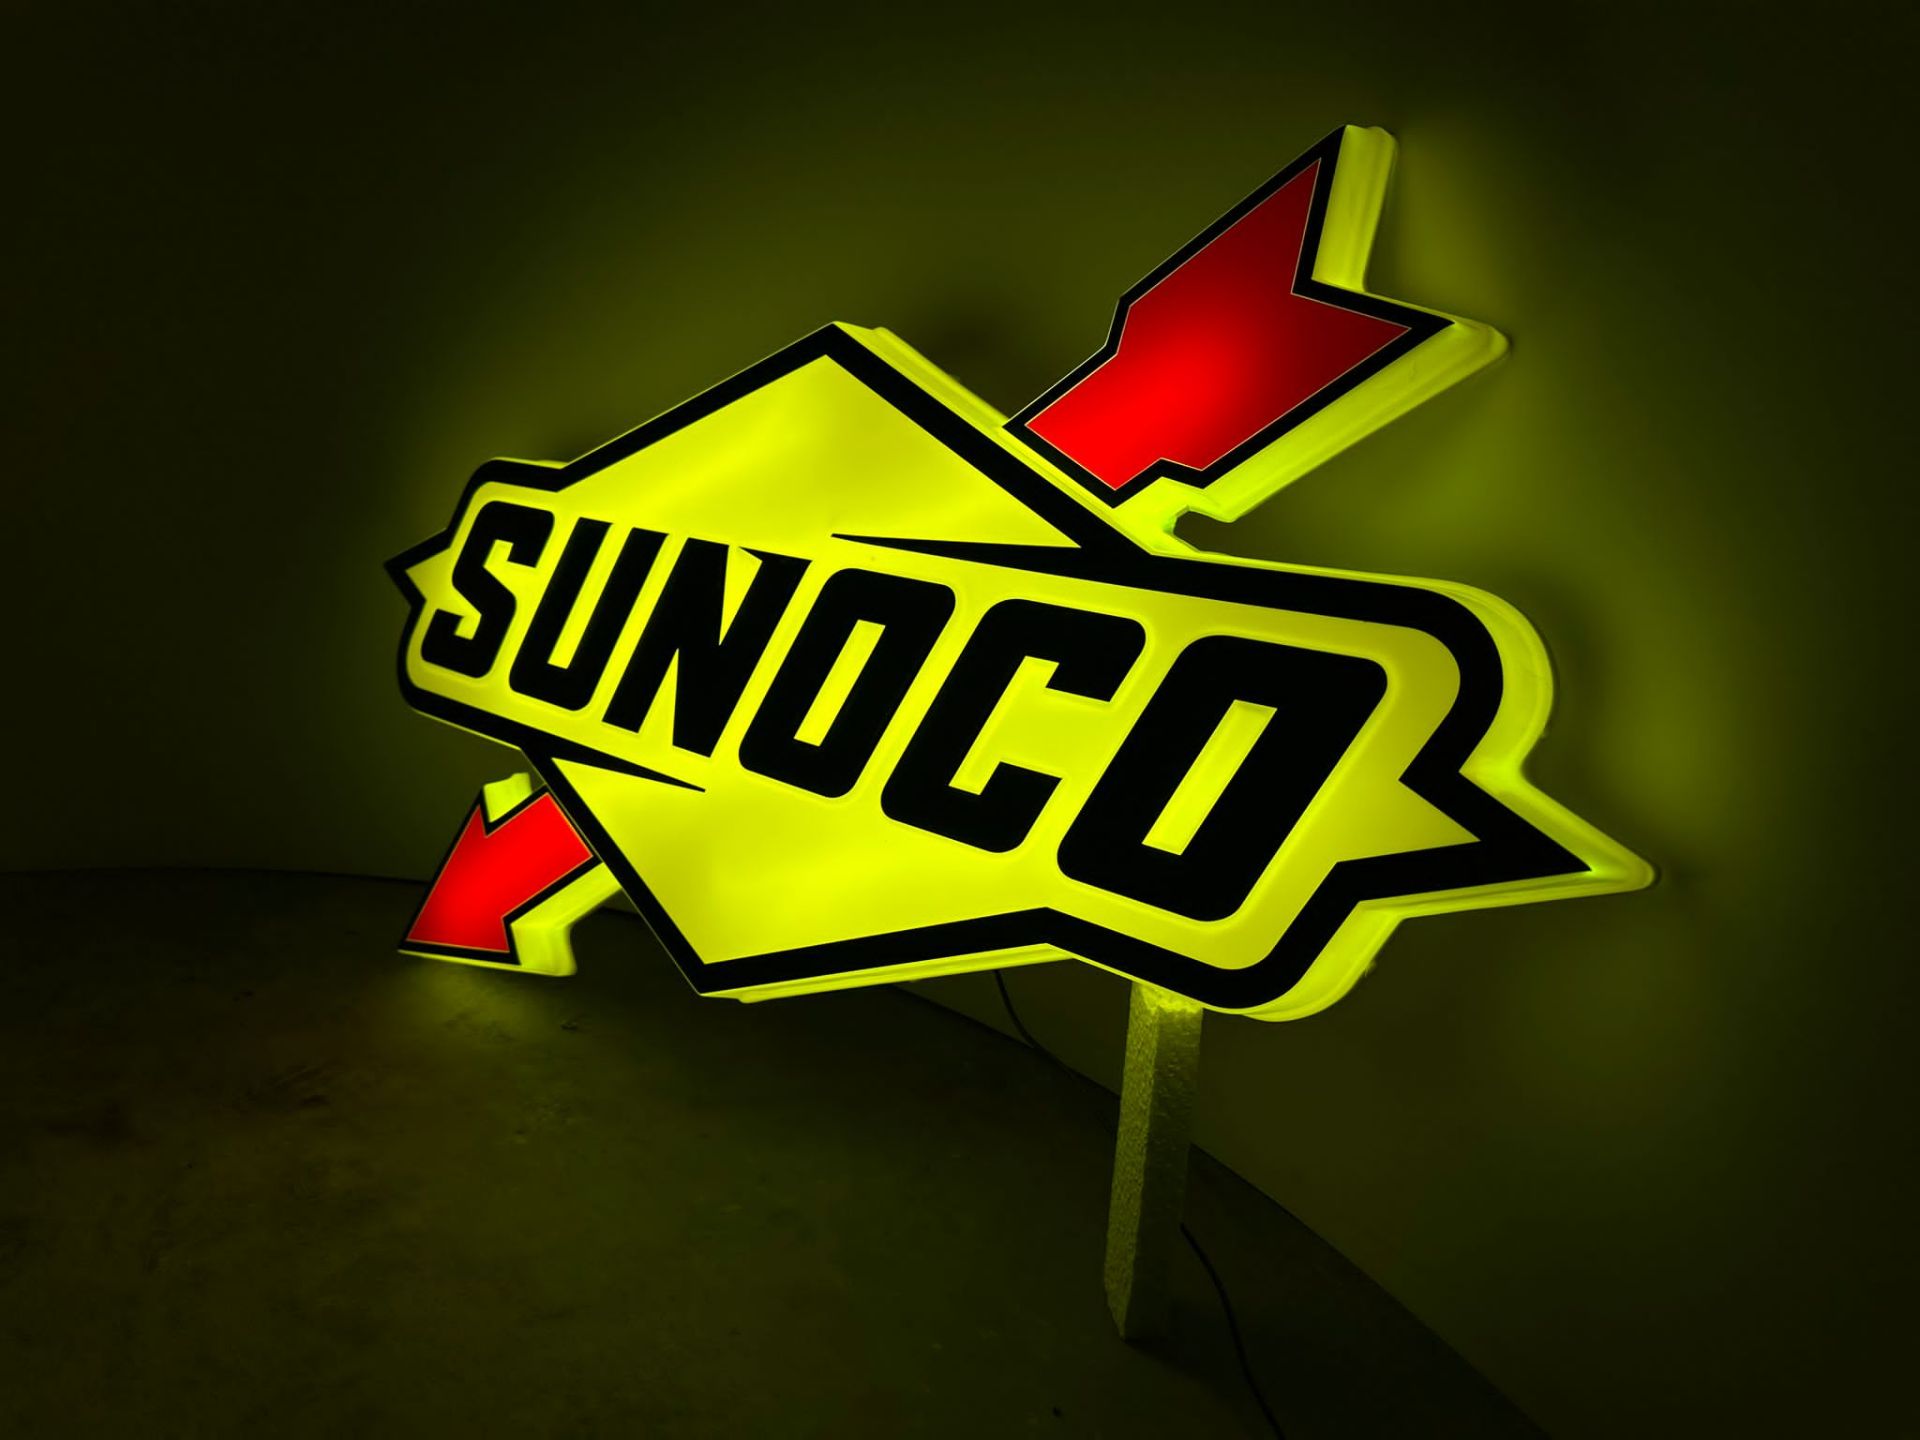 Sunoco illuminated sign - Image 2 of 6